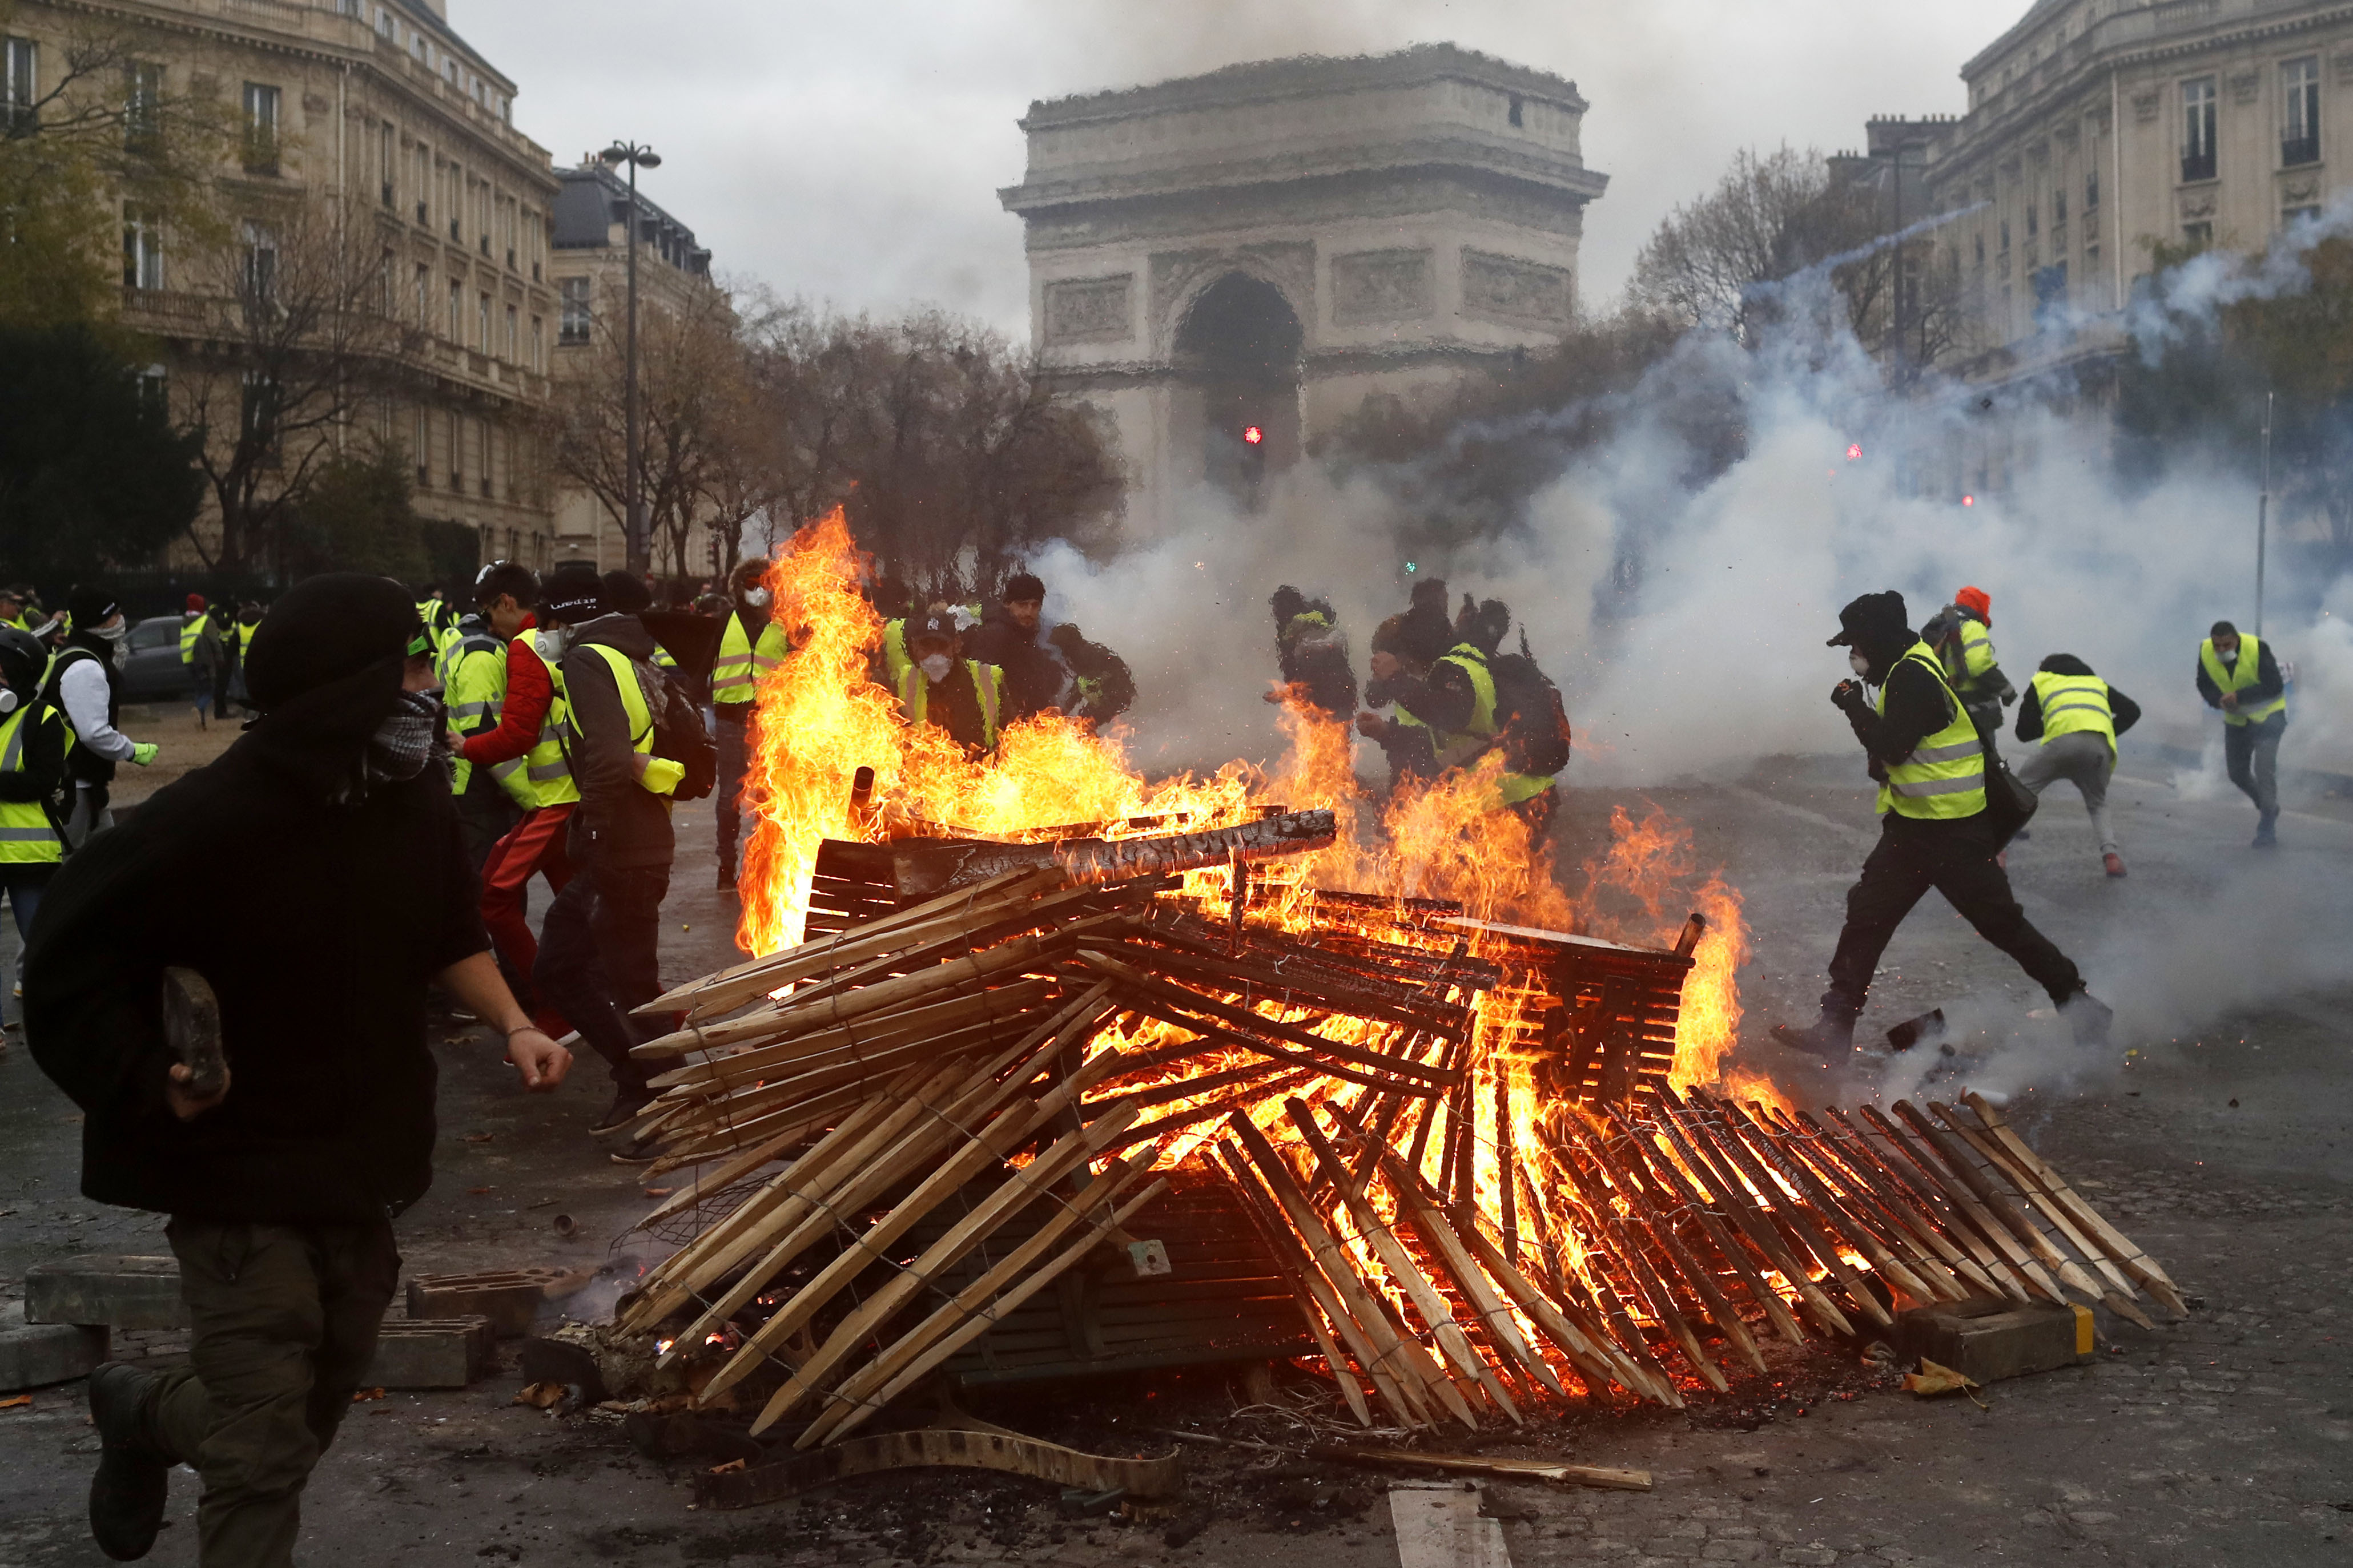 França protesto de hoje contra o governo mergulha país no caos VEJA